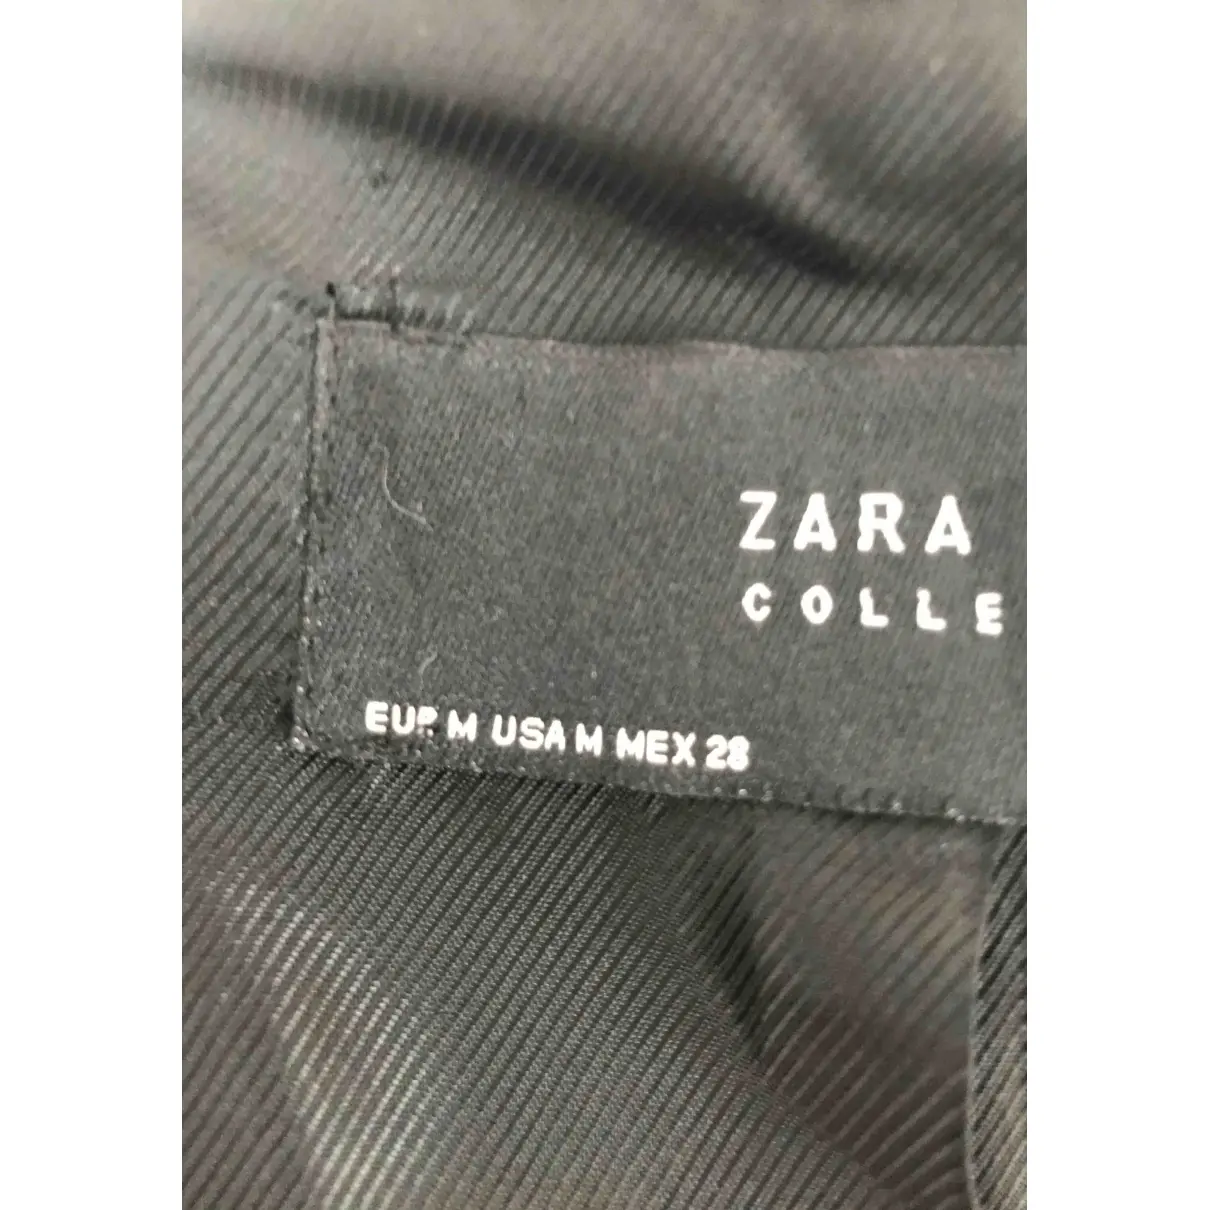 Buy Zara Coat online